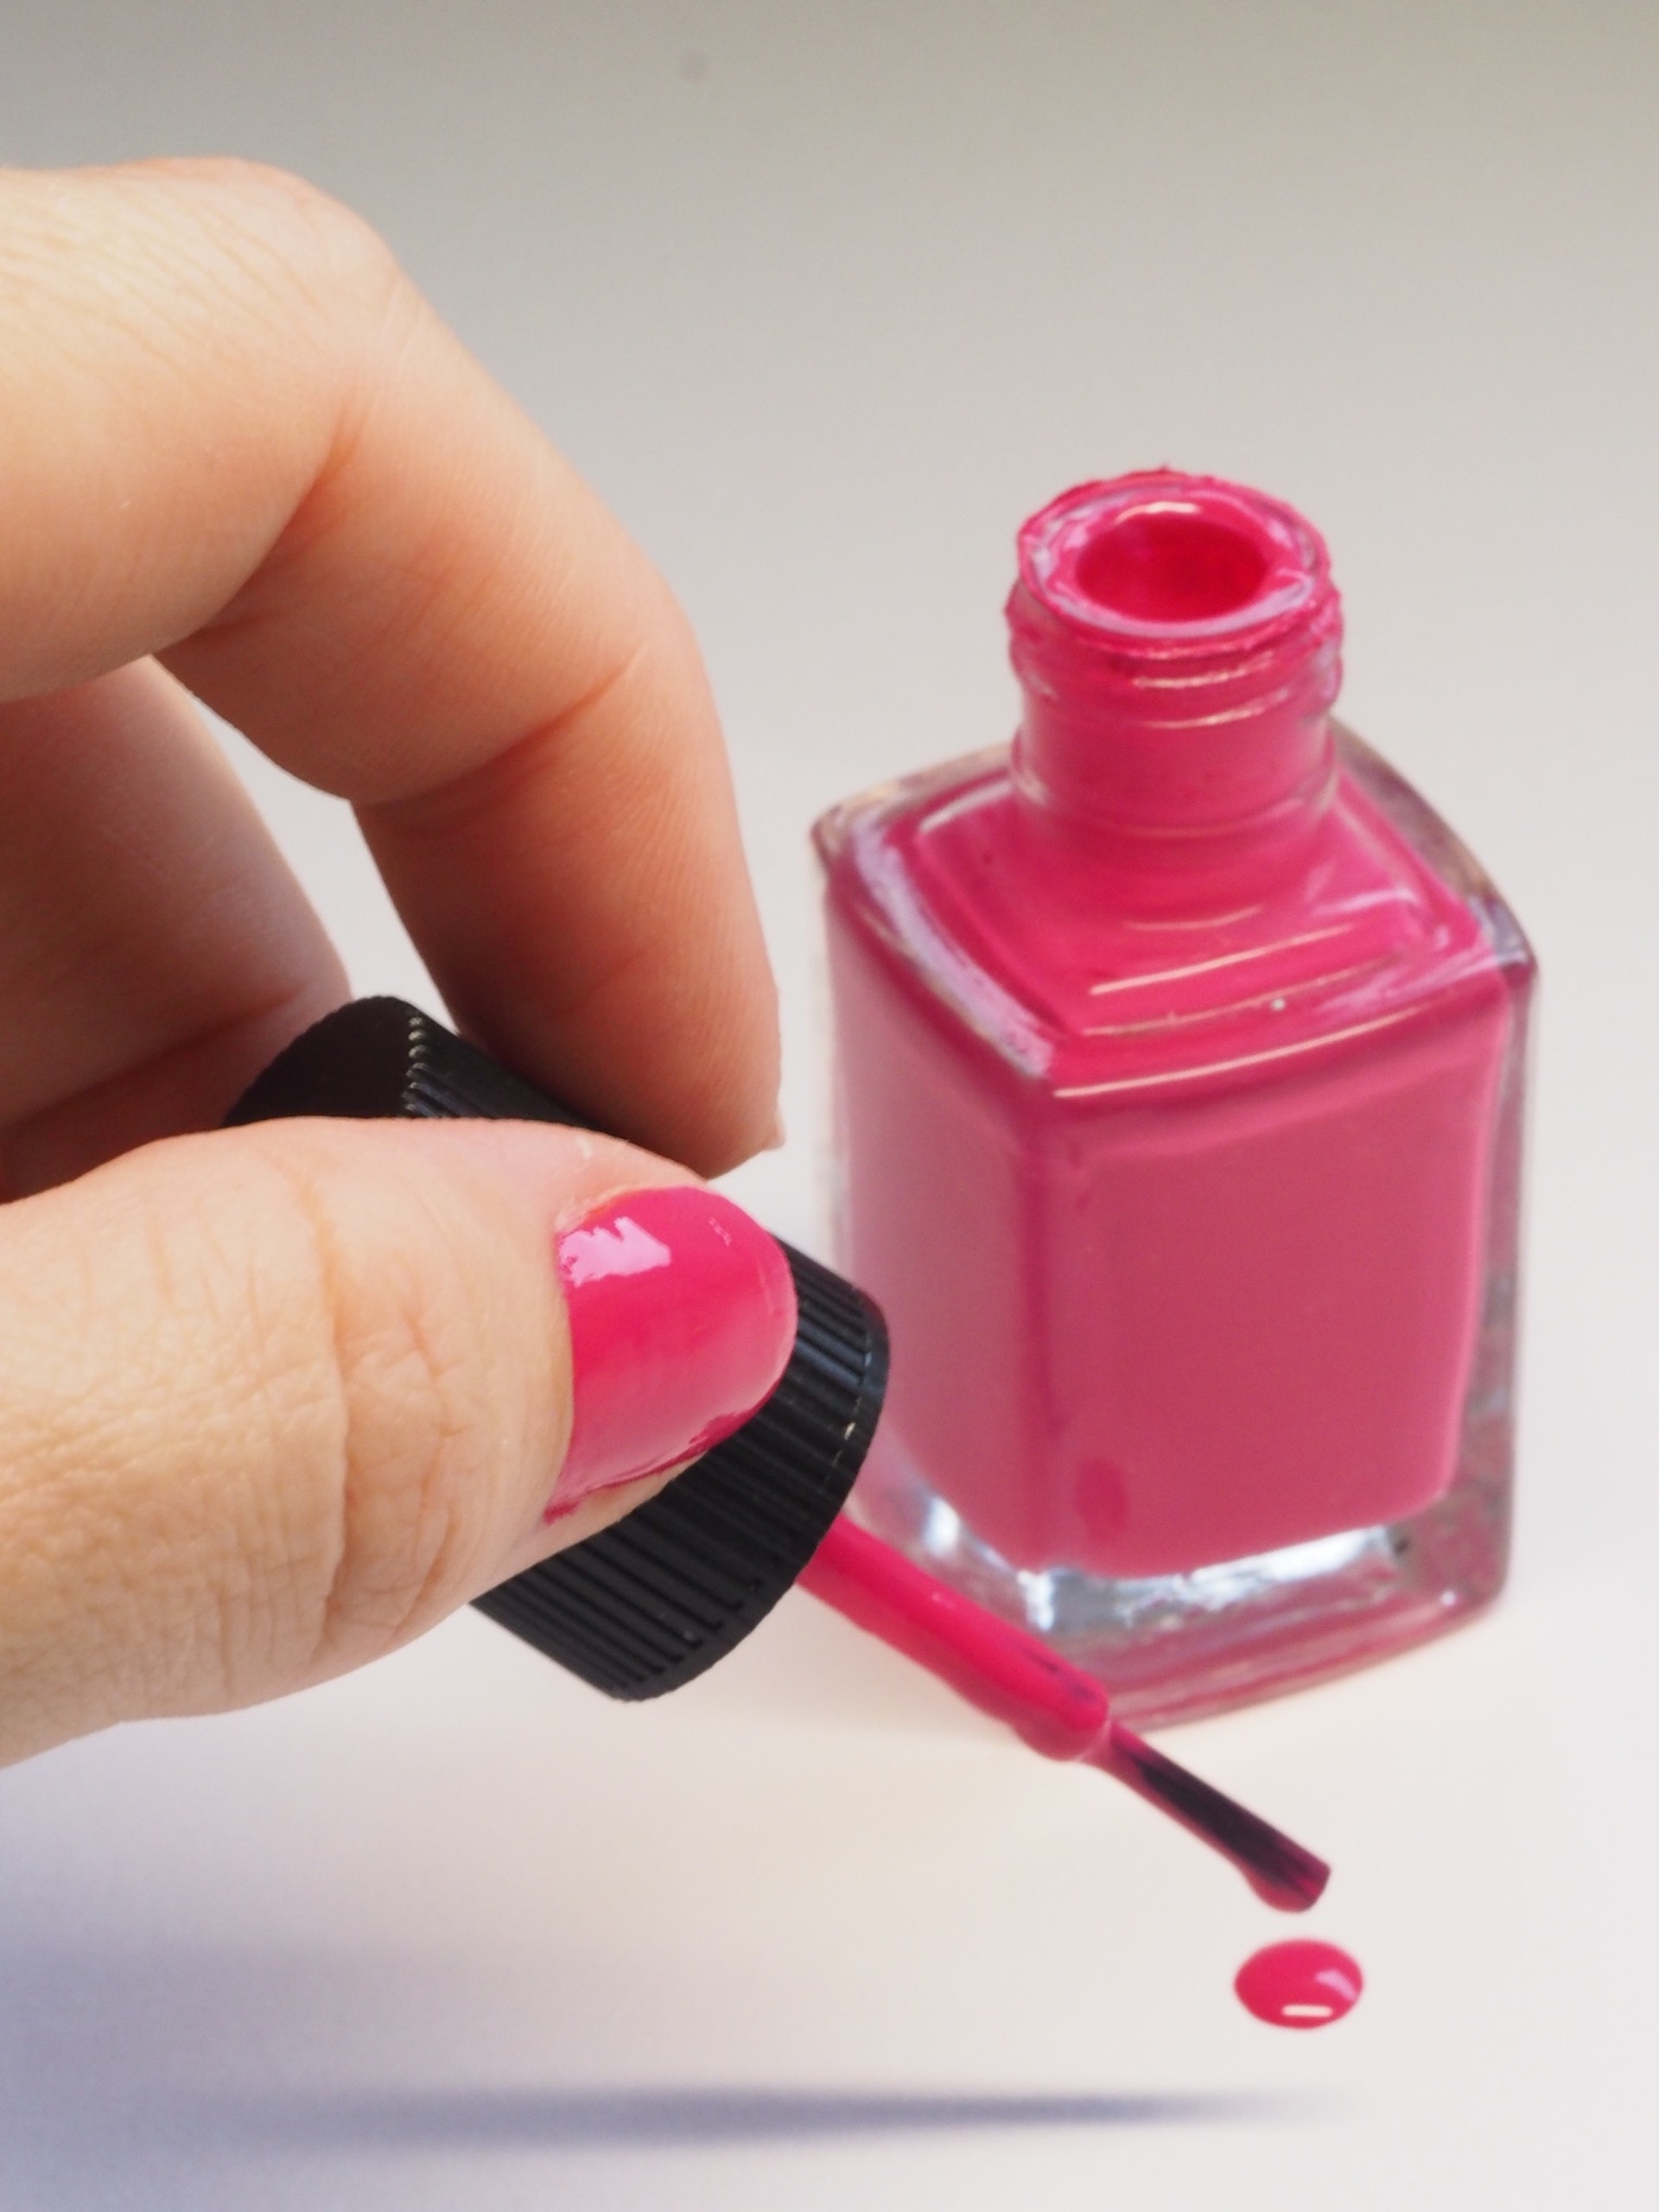 Un flacon de vernis à ongles rose | Source : Pexels